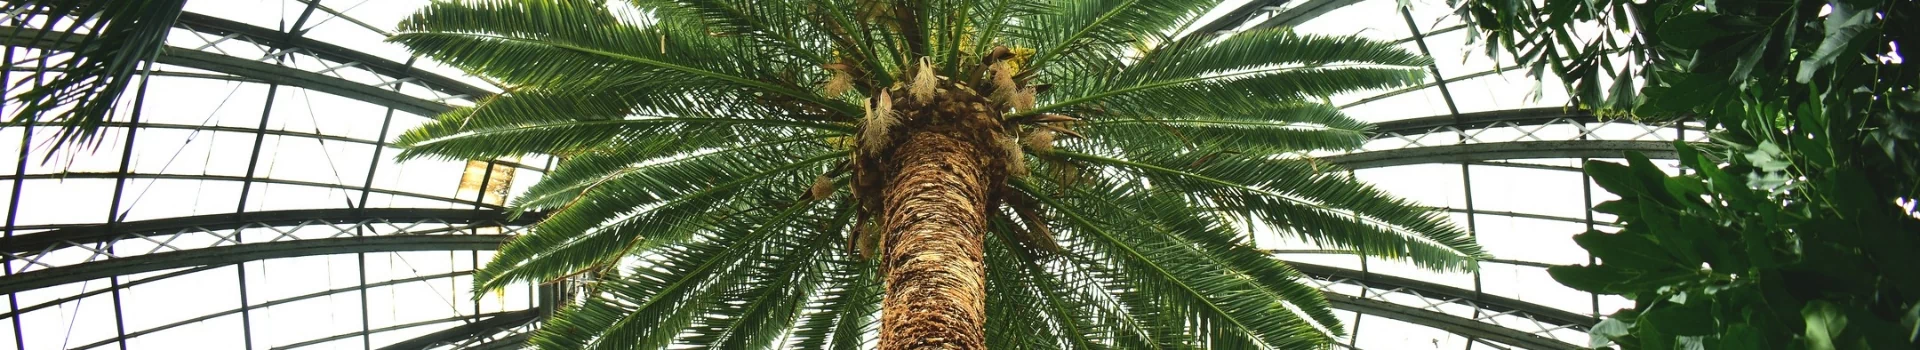 zdjęcie palmy od dołu